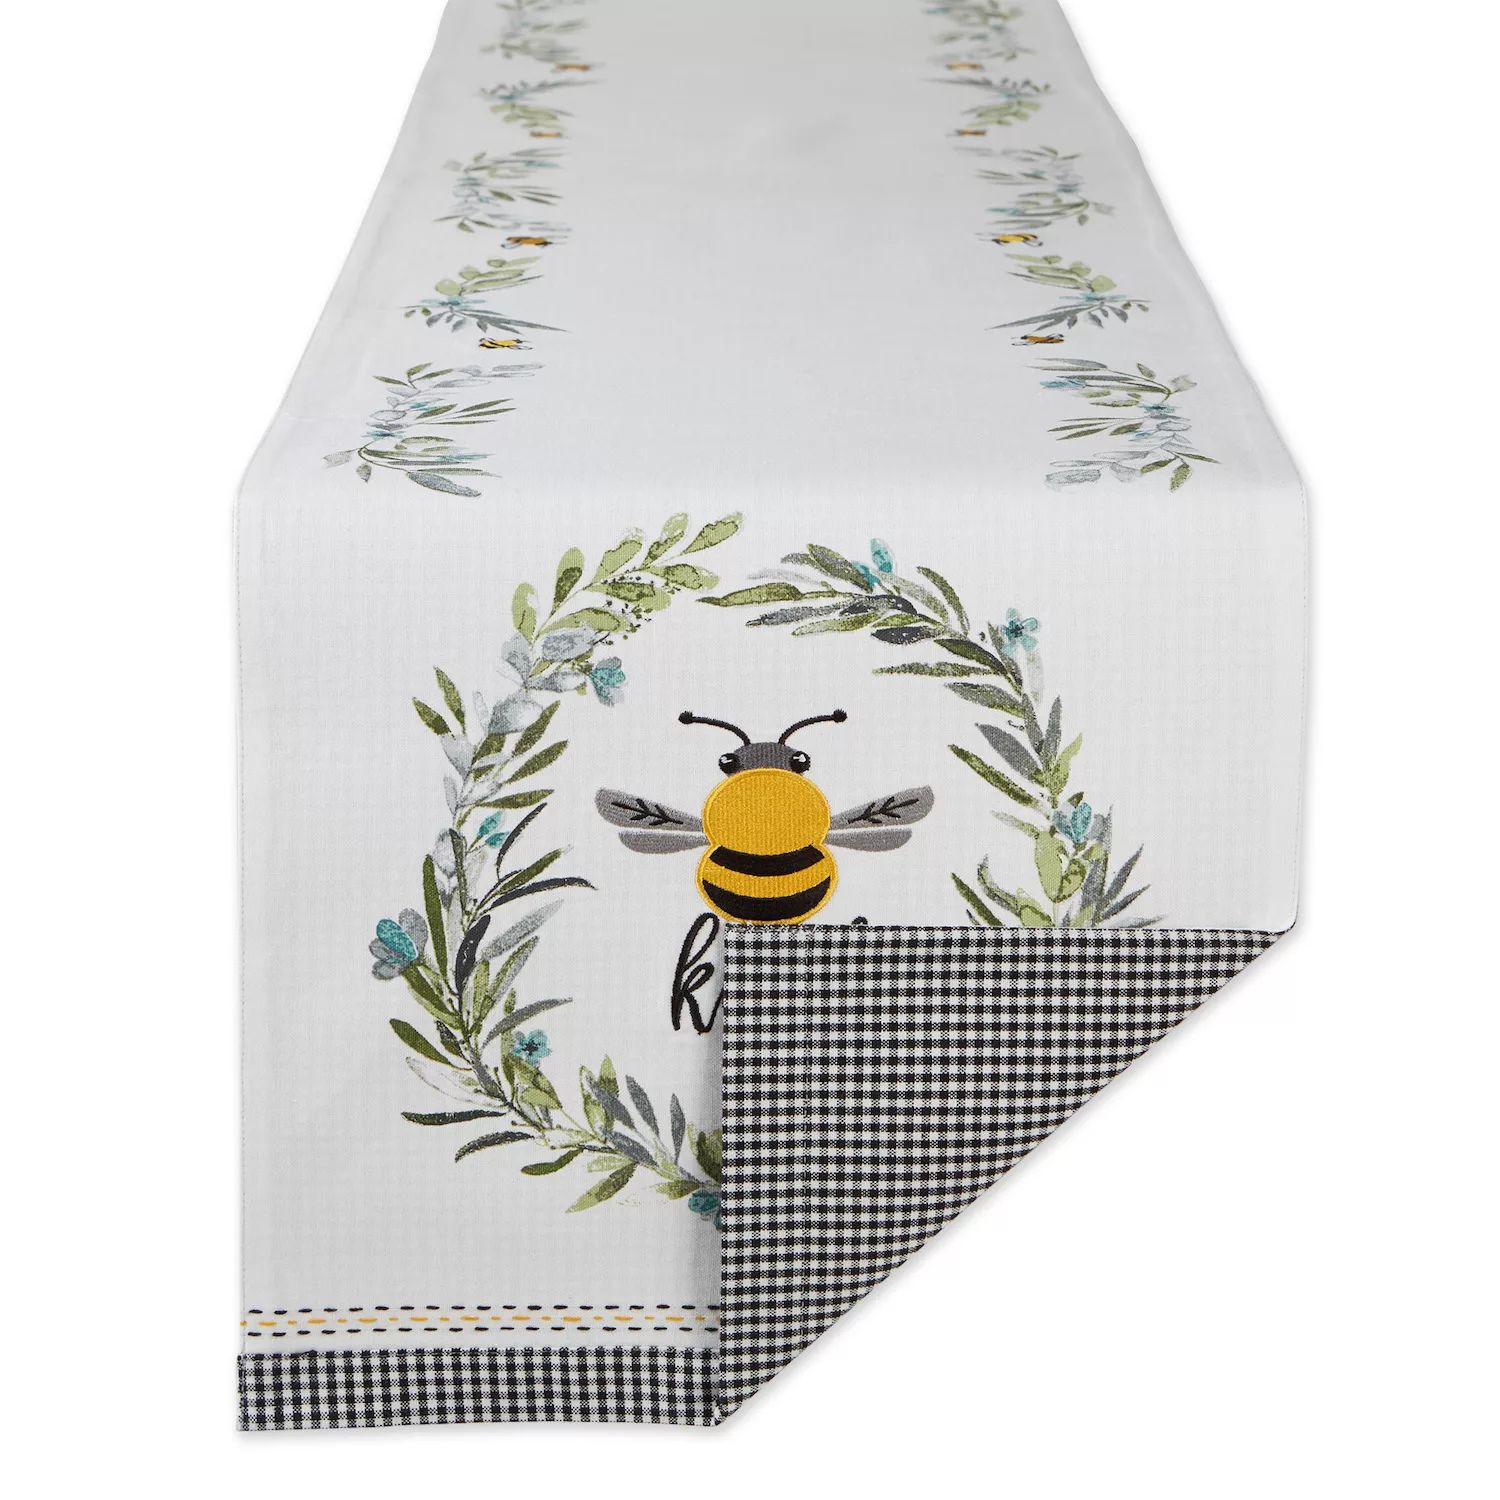 цена Двусторонняя украшенная скатерть Bee Kind, бело-серая и желтая прямоугольная скатерть размером 14 x 108 дюймов.